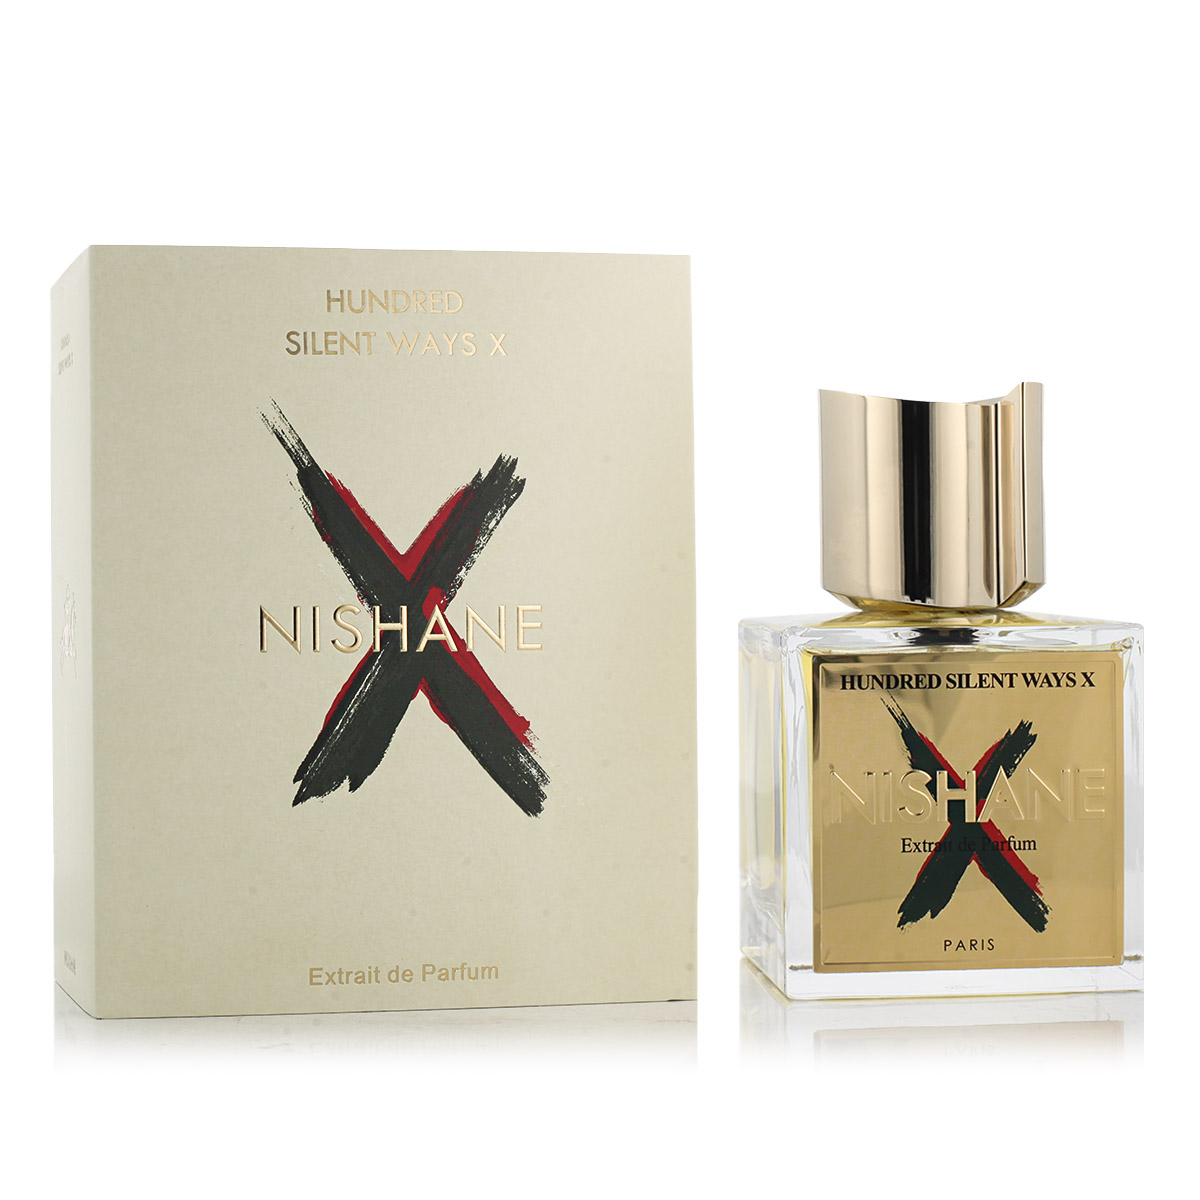 Nishane Hundred Silent Ways X 20 ml NIŠINIAI kvepalų mėginukas (atomaizeris) Unisex Parfum